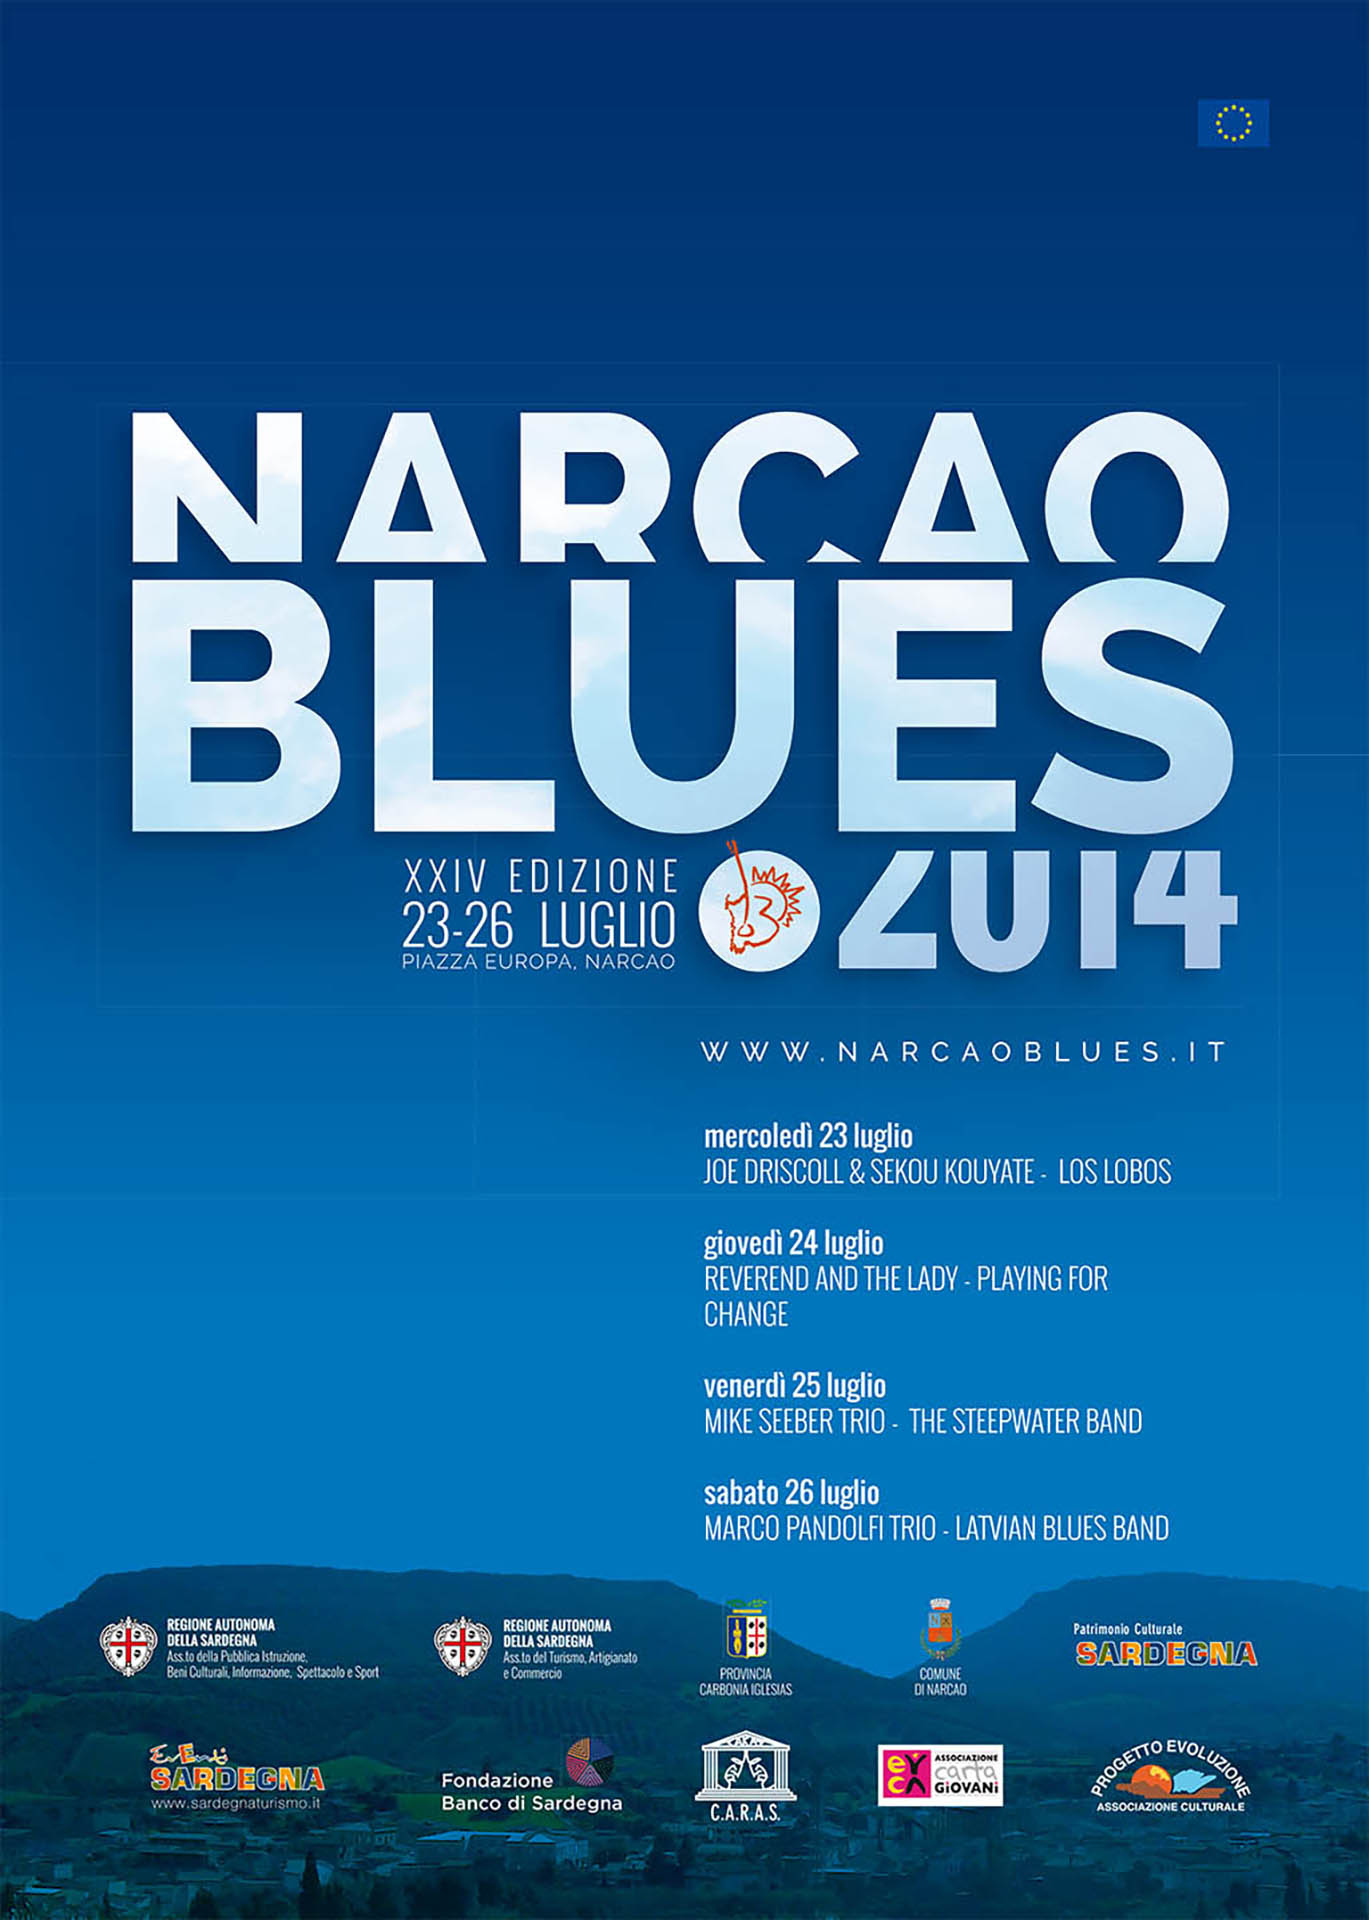 NARCAO BLUES 2014 locandina